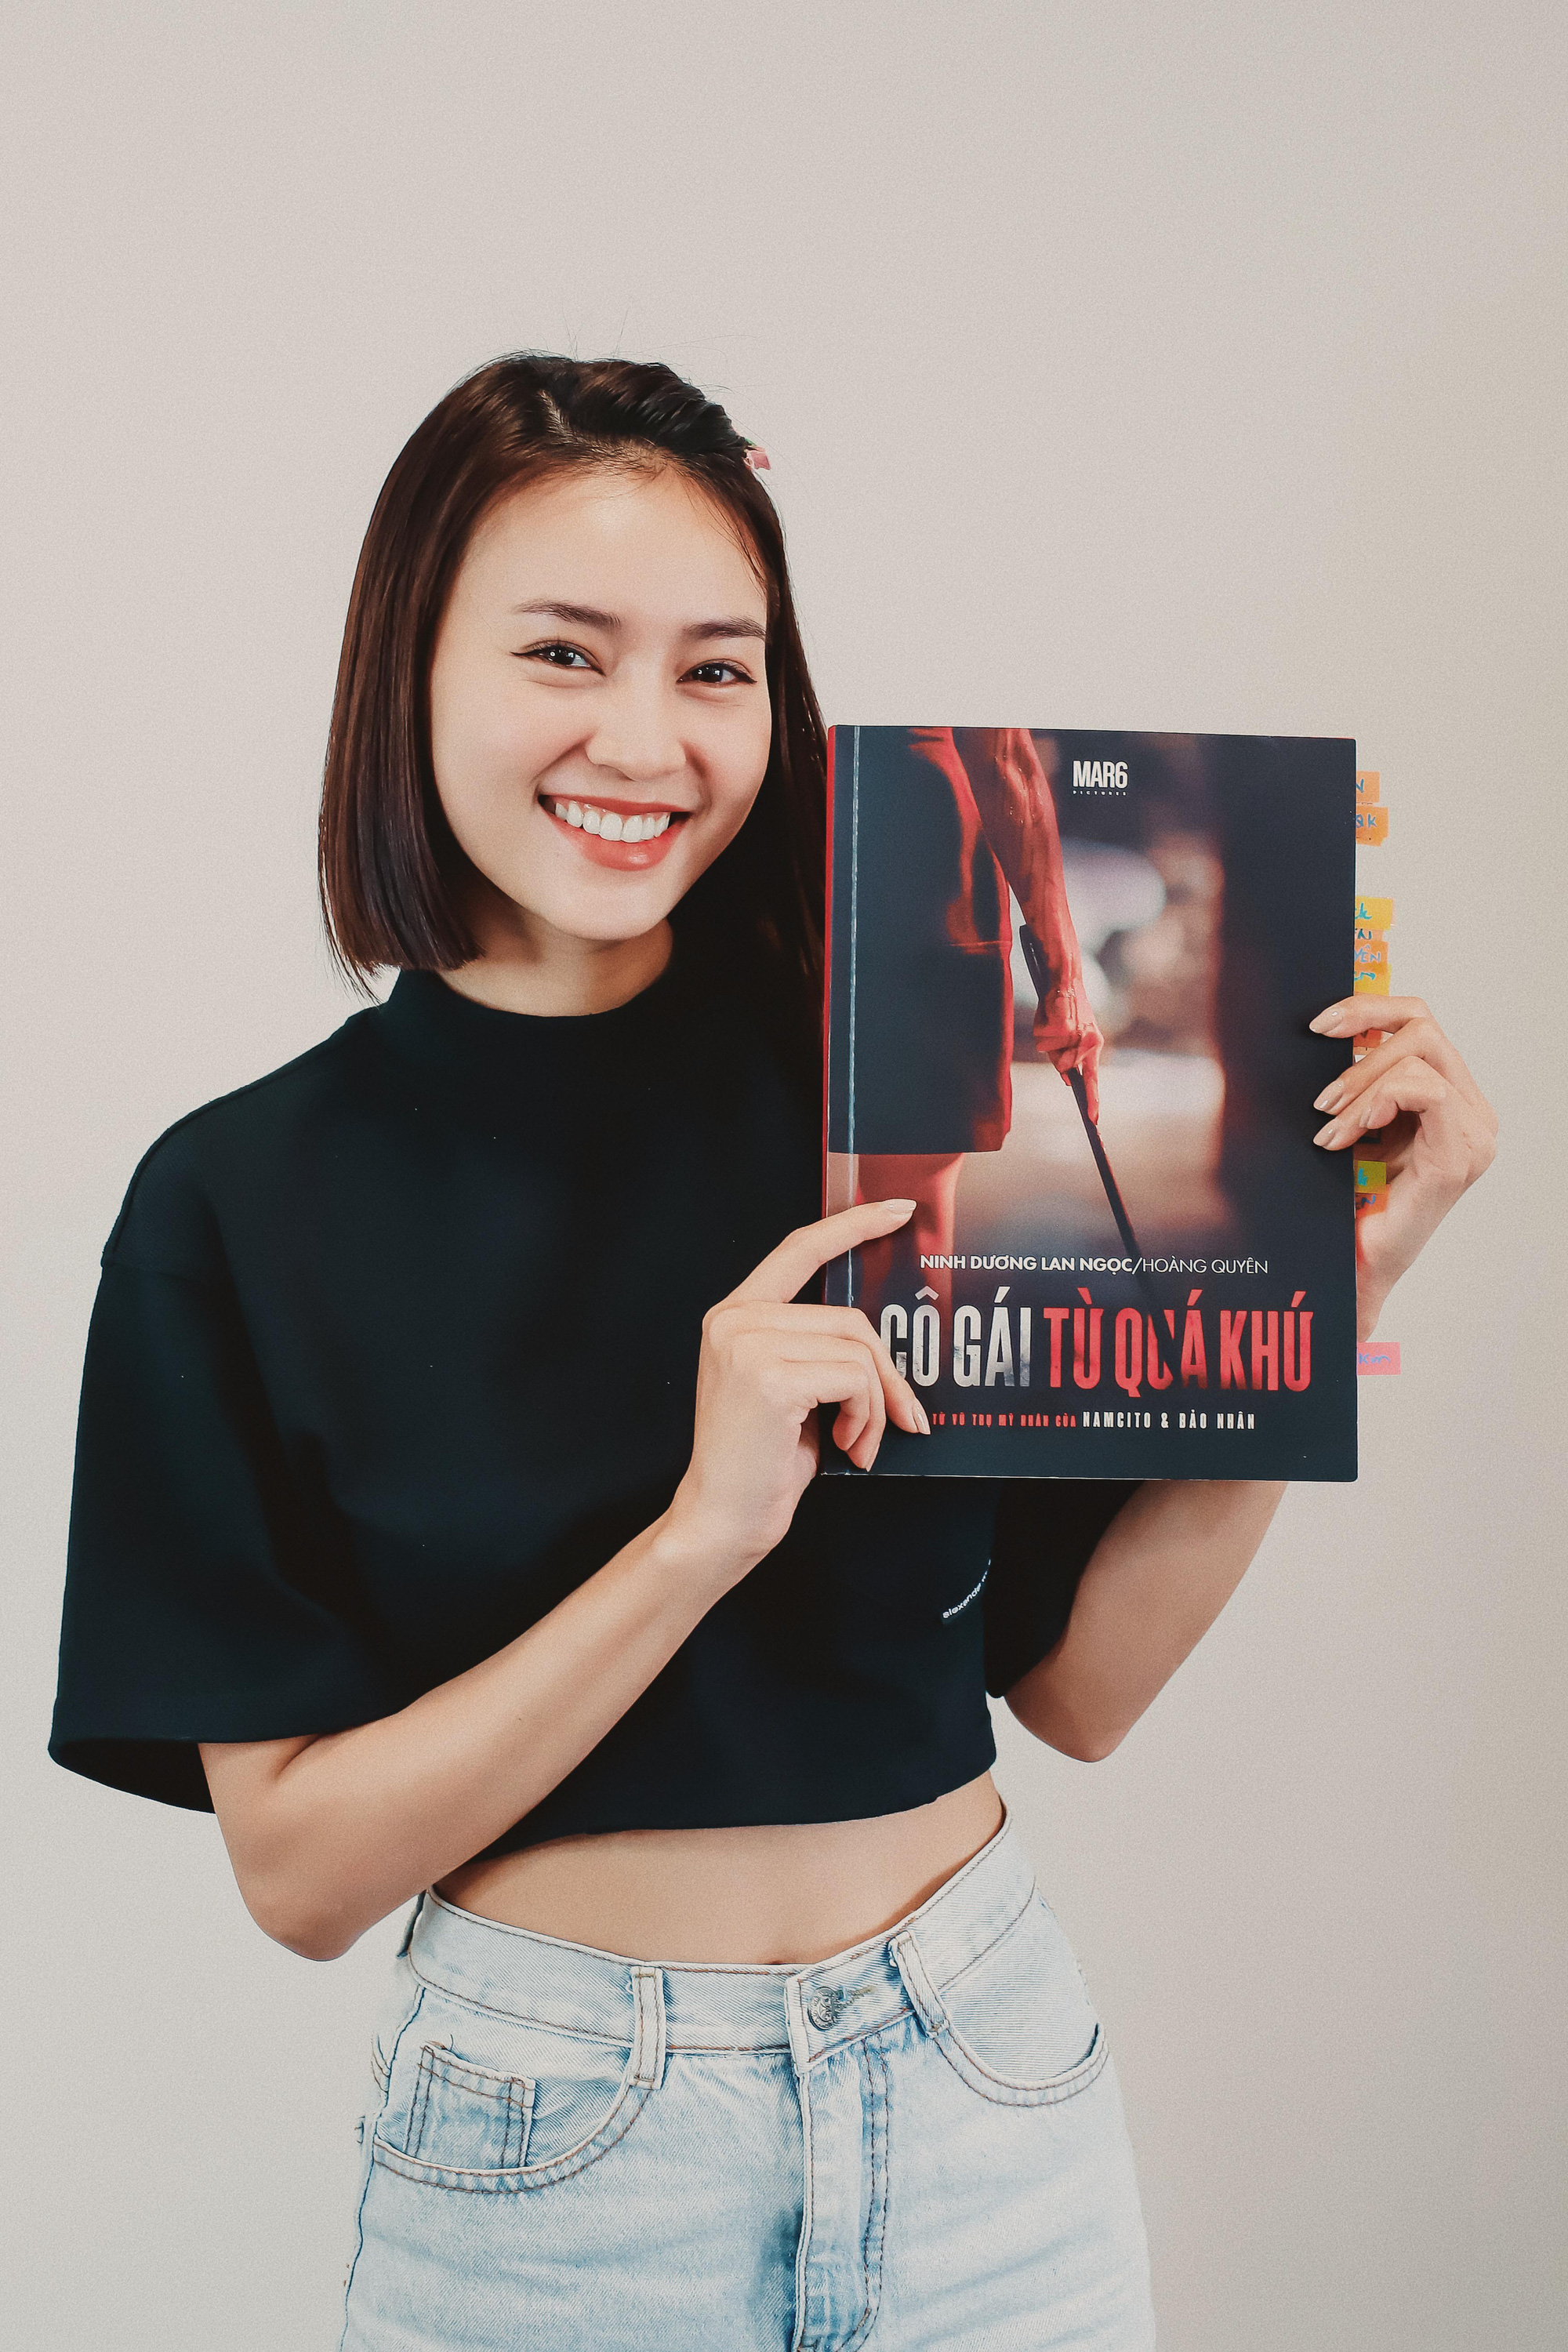 Ninh Dương Lan Ngọc bất ngờ xuống tóc, lộ mặt ú nu, đọ visual với Kaity Nguyễn ở hậu trường phim mới - Ảnh 2.